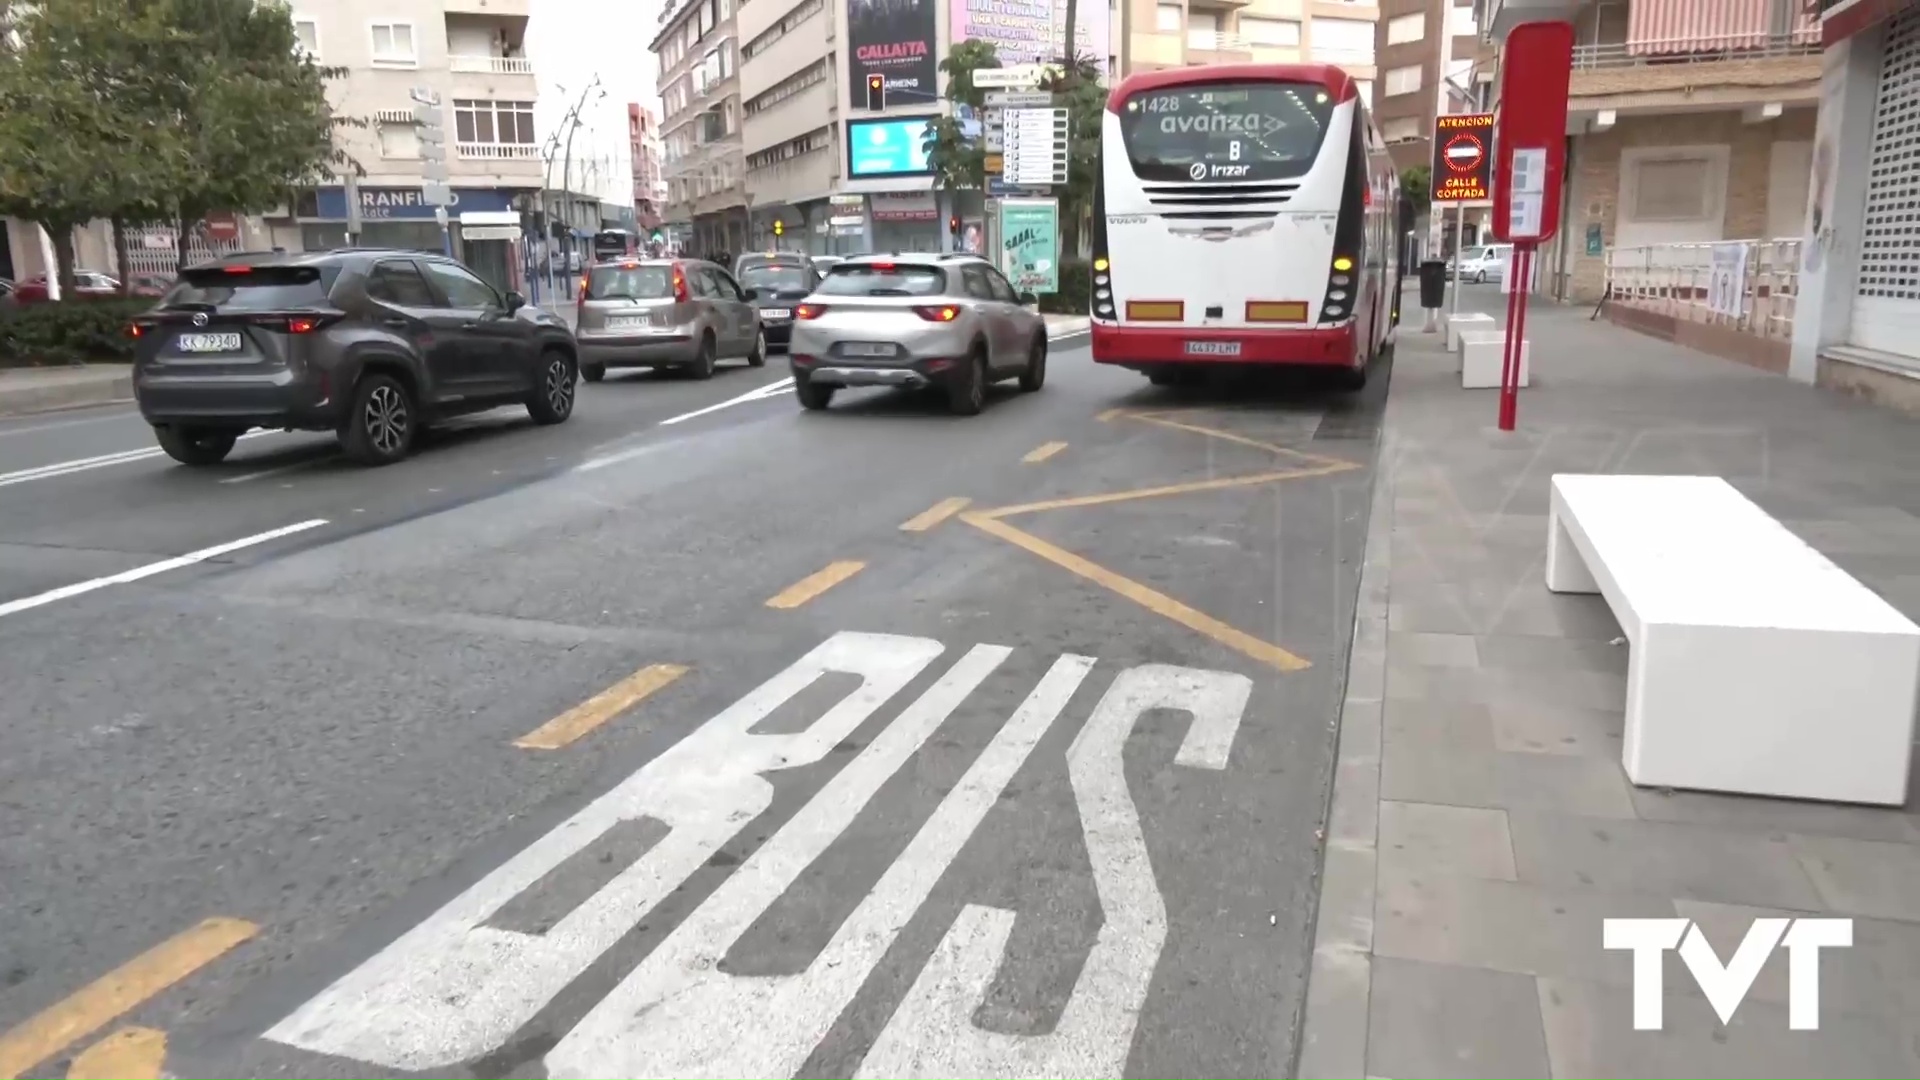 Imagen de Sueña Torrevieja asegura que la compra directa de los autobuses por el Ayuntamiento generará un sobrecoste de 13 millones de euros